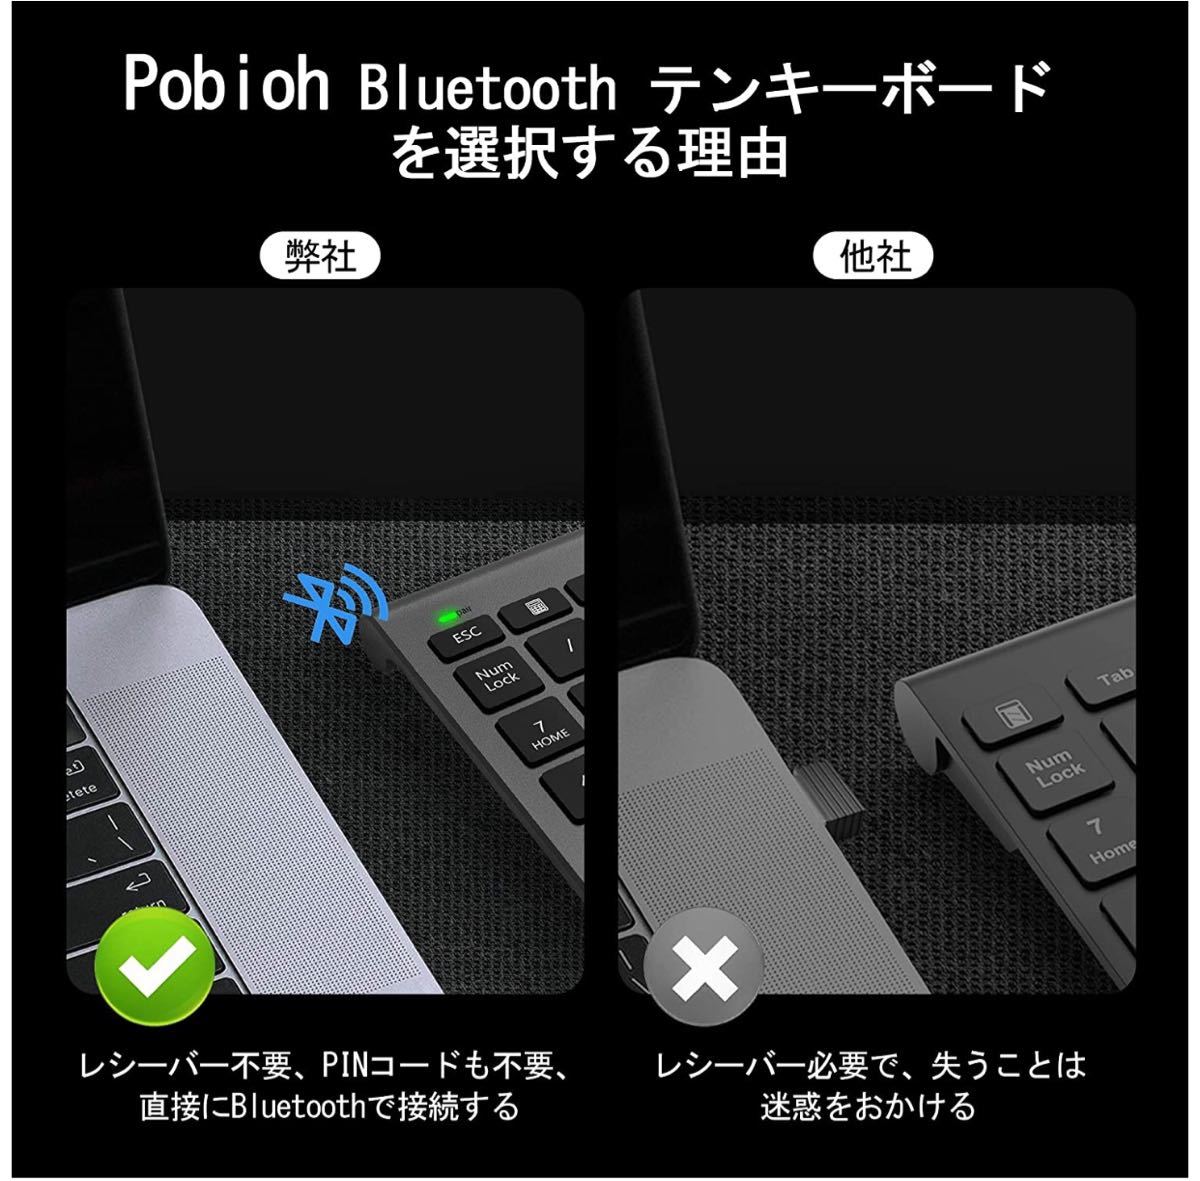 テンキーボード Bluetooth 3.0 テンキー アップグレード 22キーブルートゥース 数字キーボード 